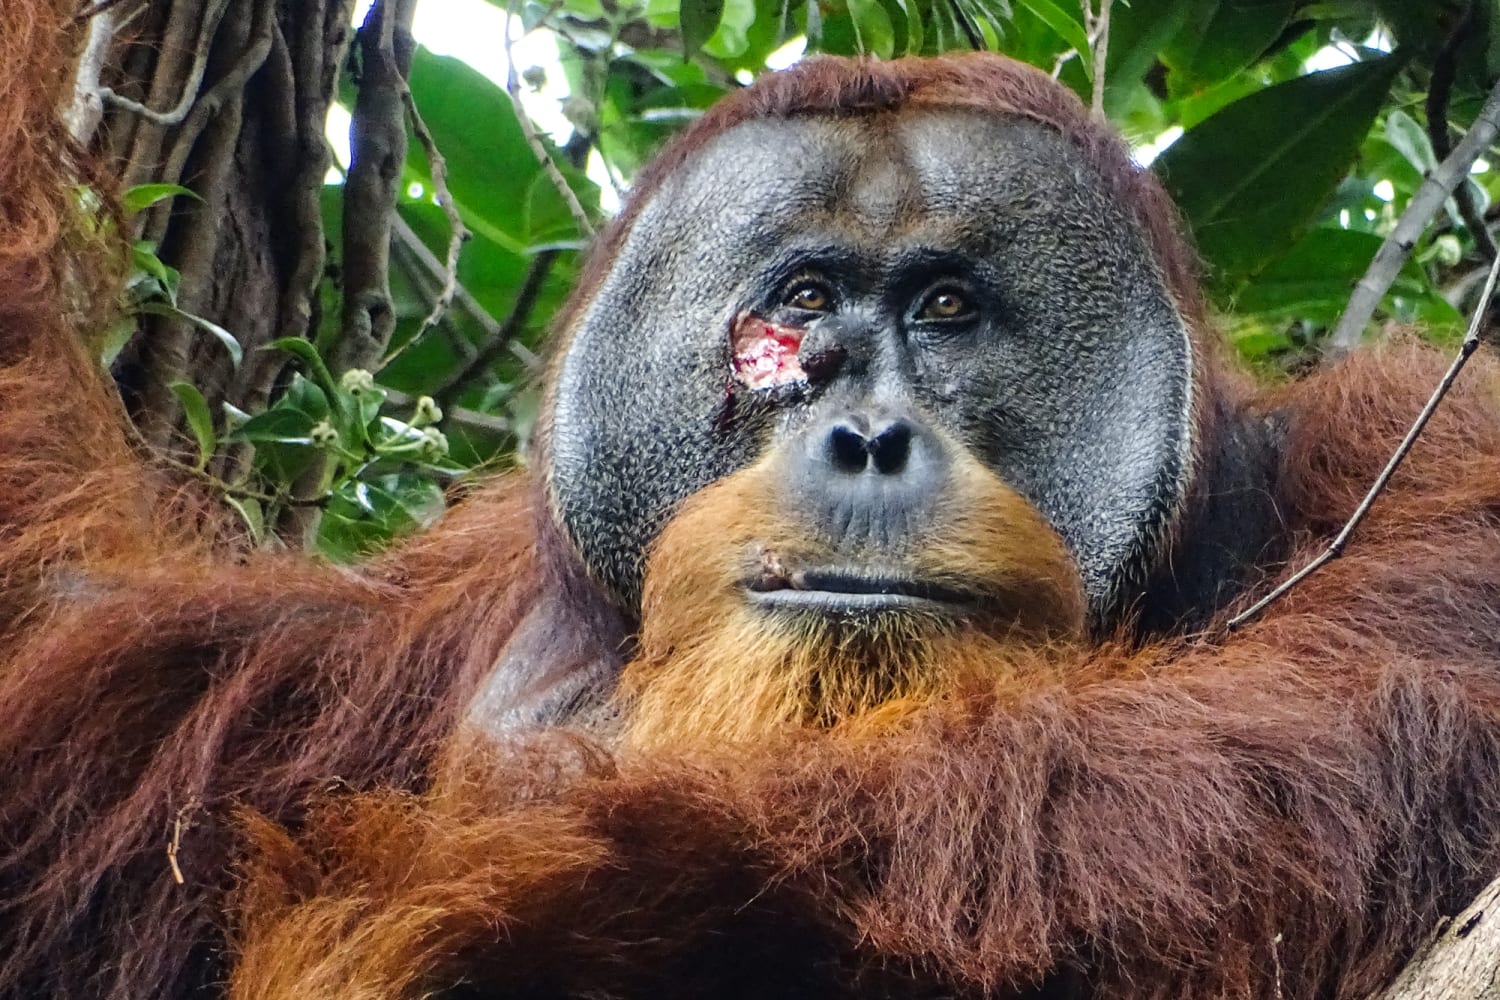 Впервые в своем роде орангутанг лечил рану лекарственным растением.